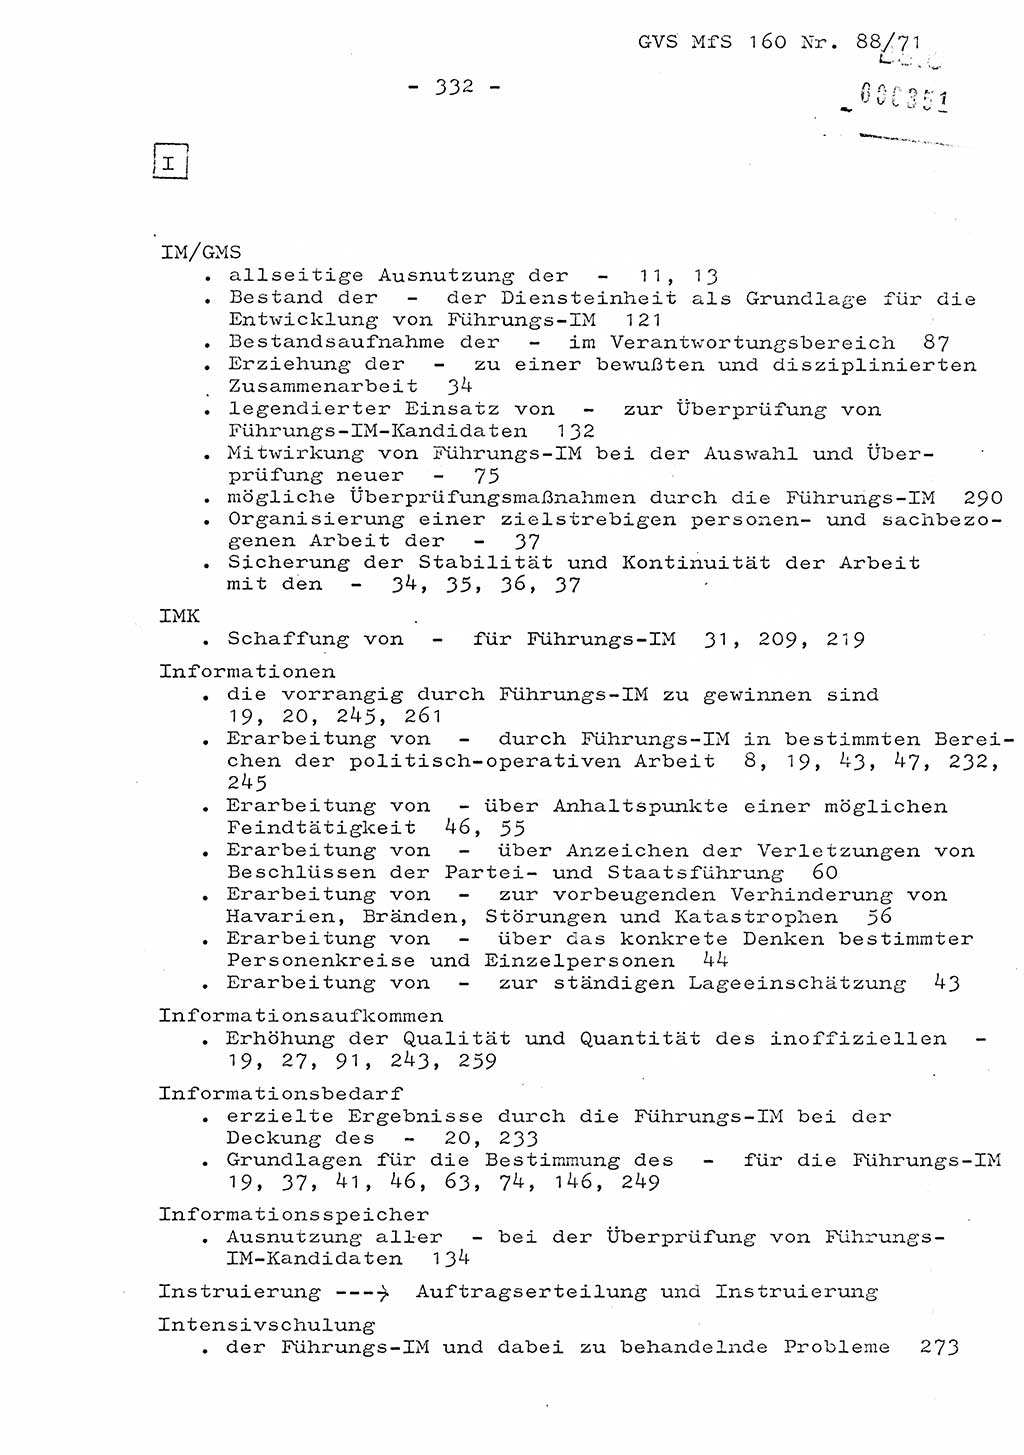 Dissertation Oberstleutnant Josef Schwarz (BV Schwerin), Major Fritz Amm (JHS), Hauptmann Peter Gräßler (JHS), Ministerium für Staatssicherheit (MfS) [Deutsche Demokratische Republik (DDR)], Juristische Hochschule (JHS), Geheime Verschlußsache (GVS) 160-88/71, Potsdam 1972, Seite 332 (Diss. MfS DDR JHS GVS 160-88/71 1972, S. 332)